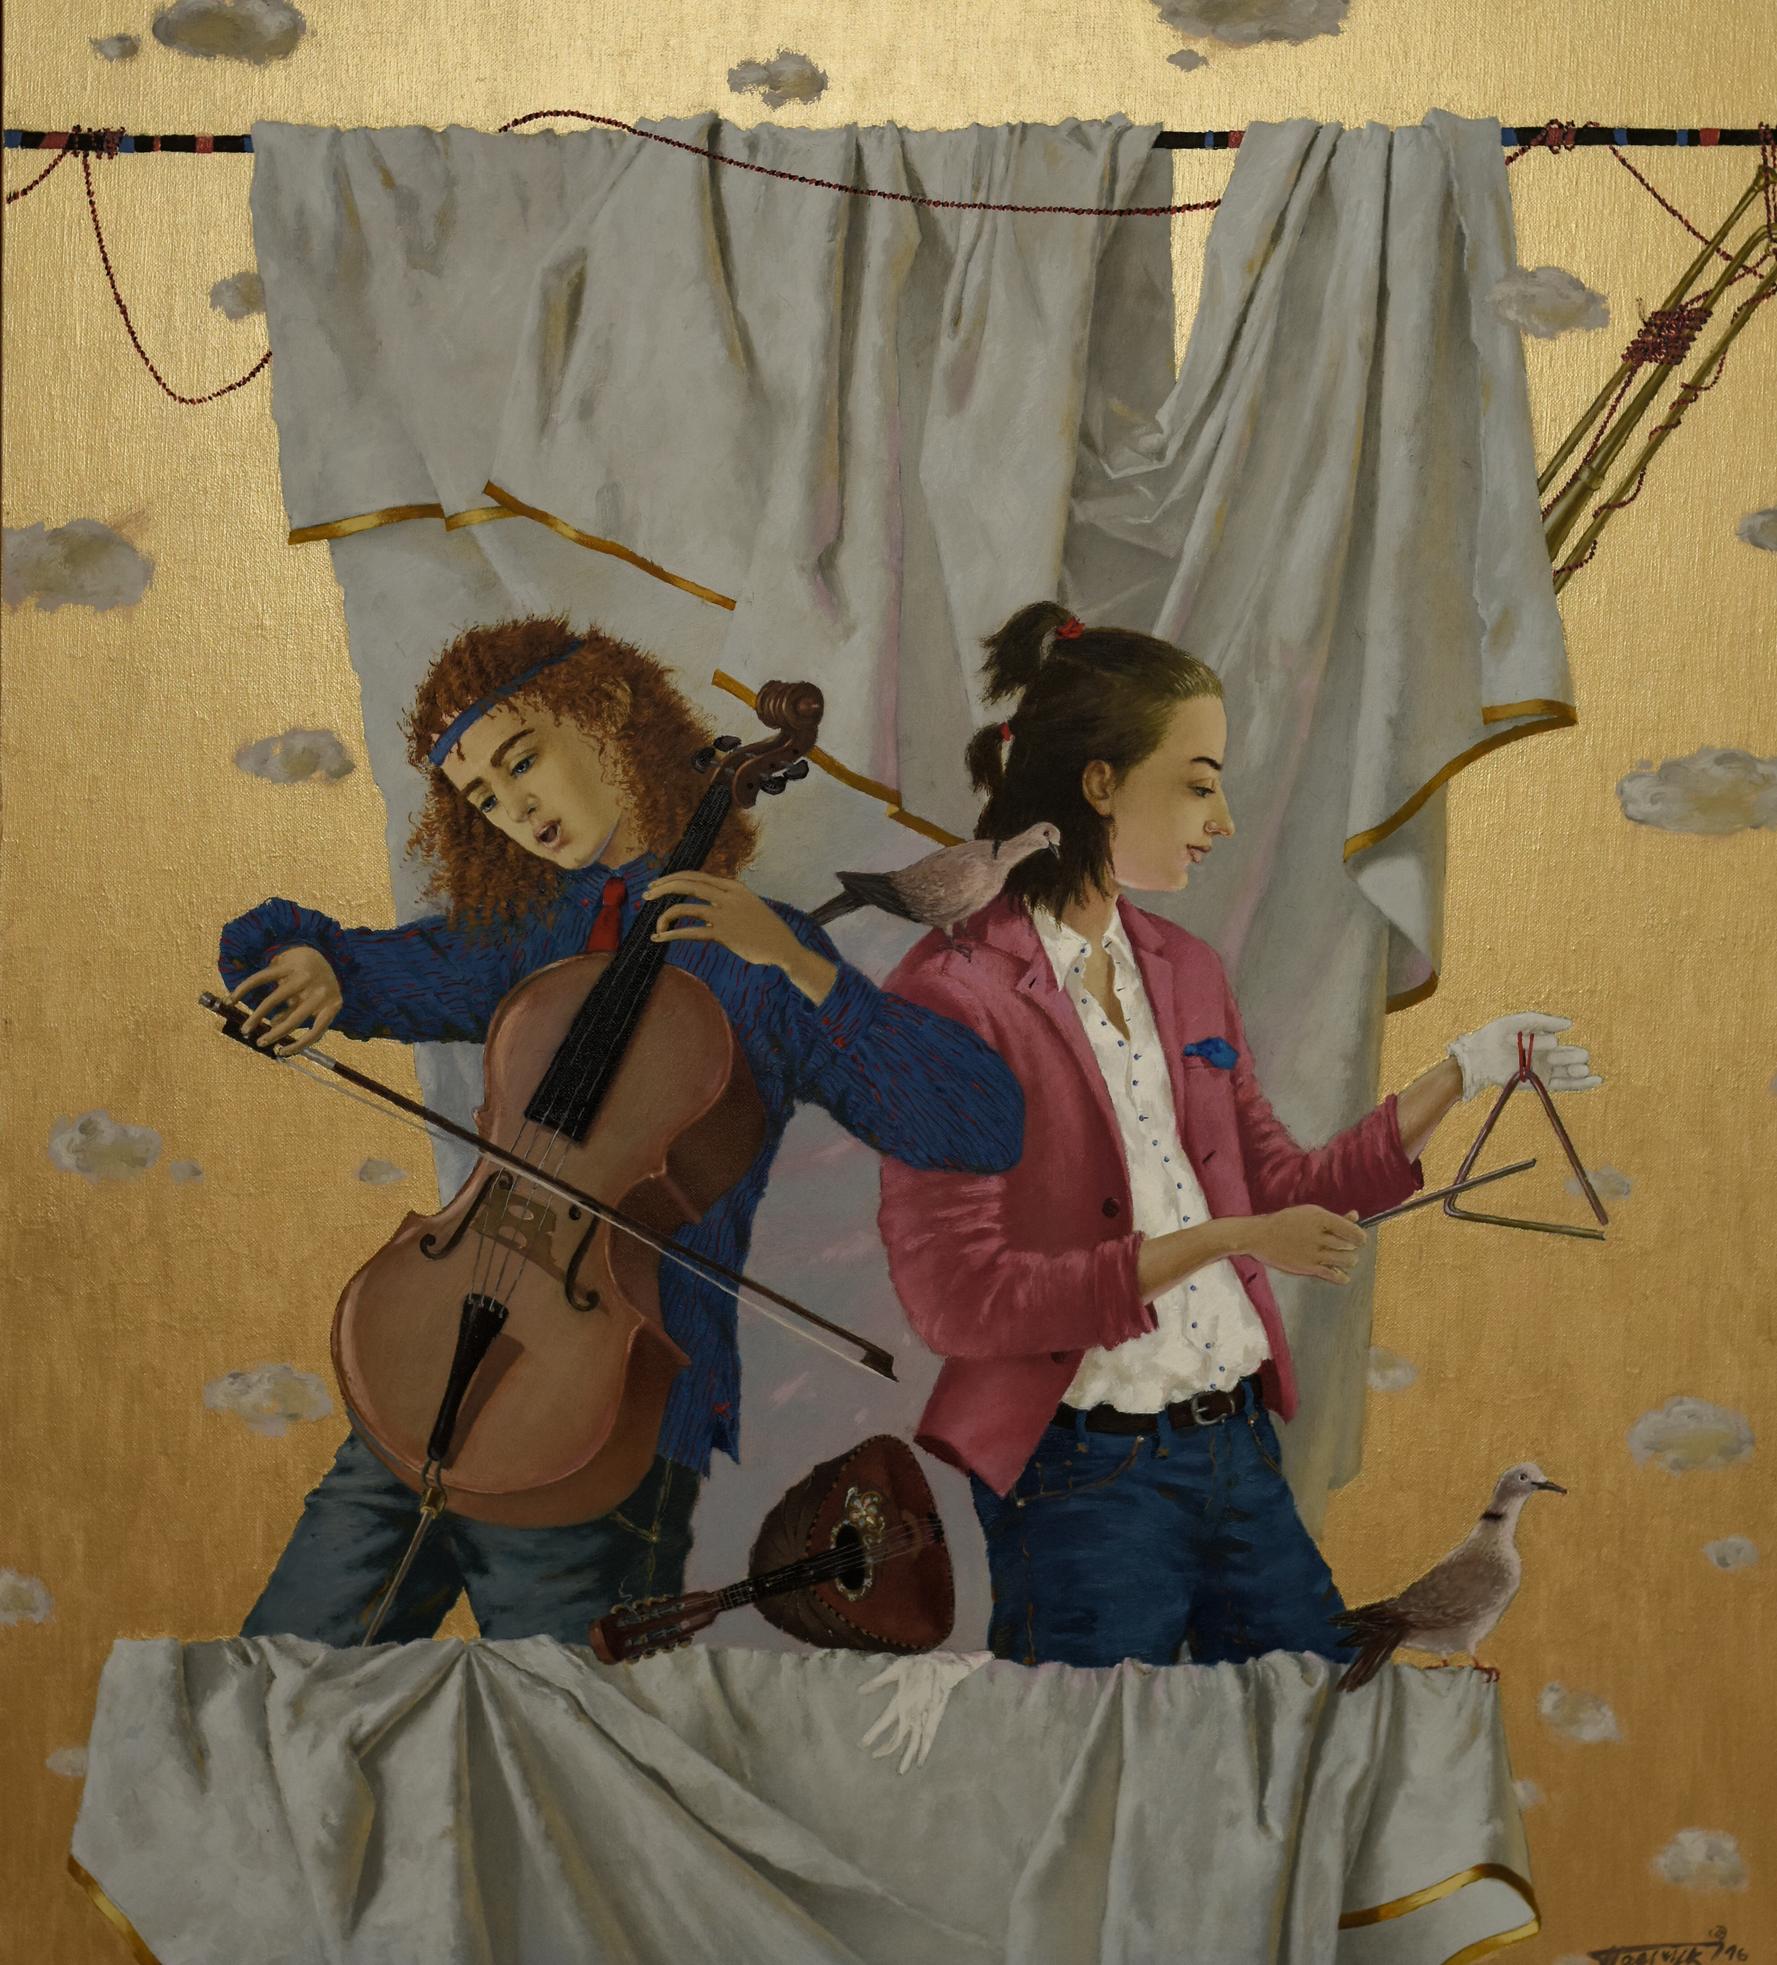 Animal Painting Tatyana Palchuk - Duo avec violoncelliste. 2016. Huile sur toile, 64 x 70 cm